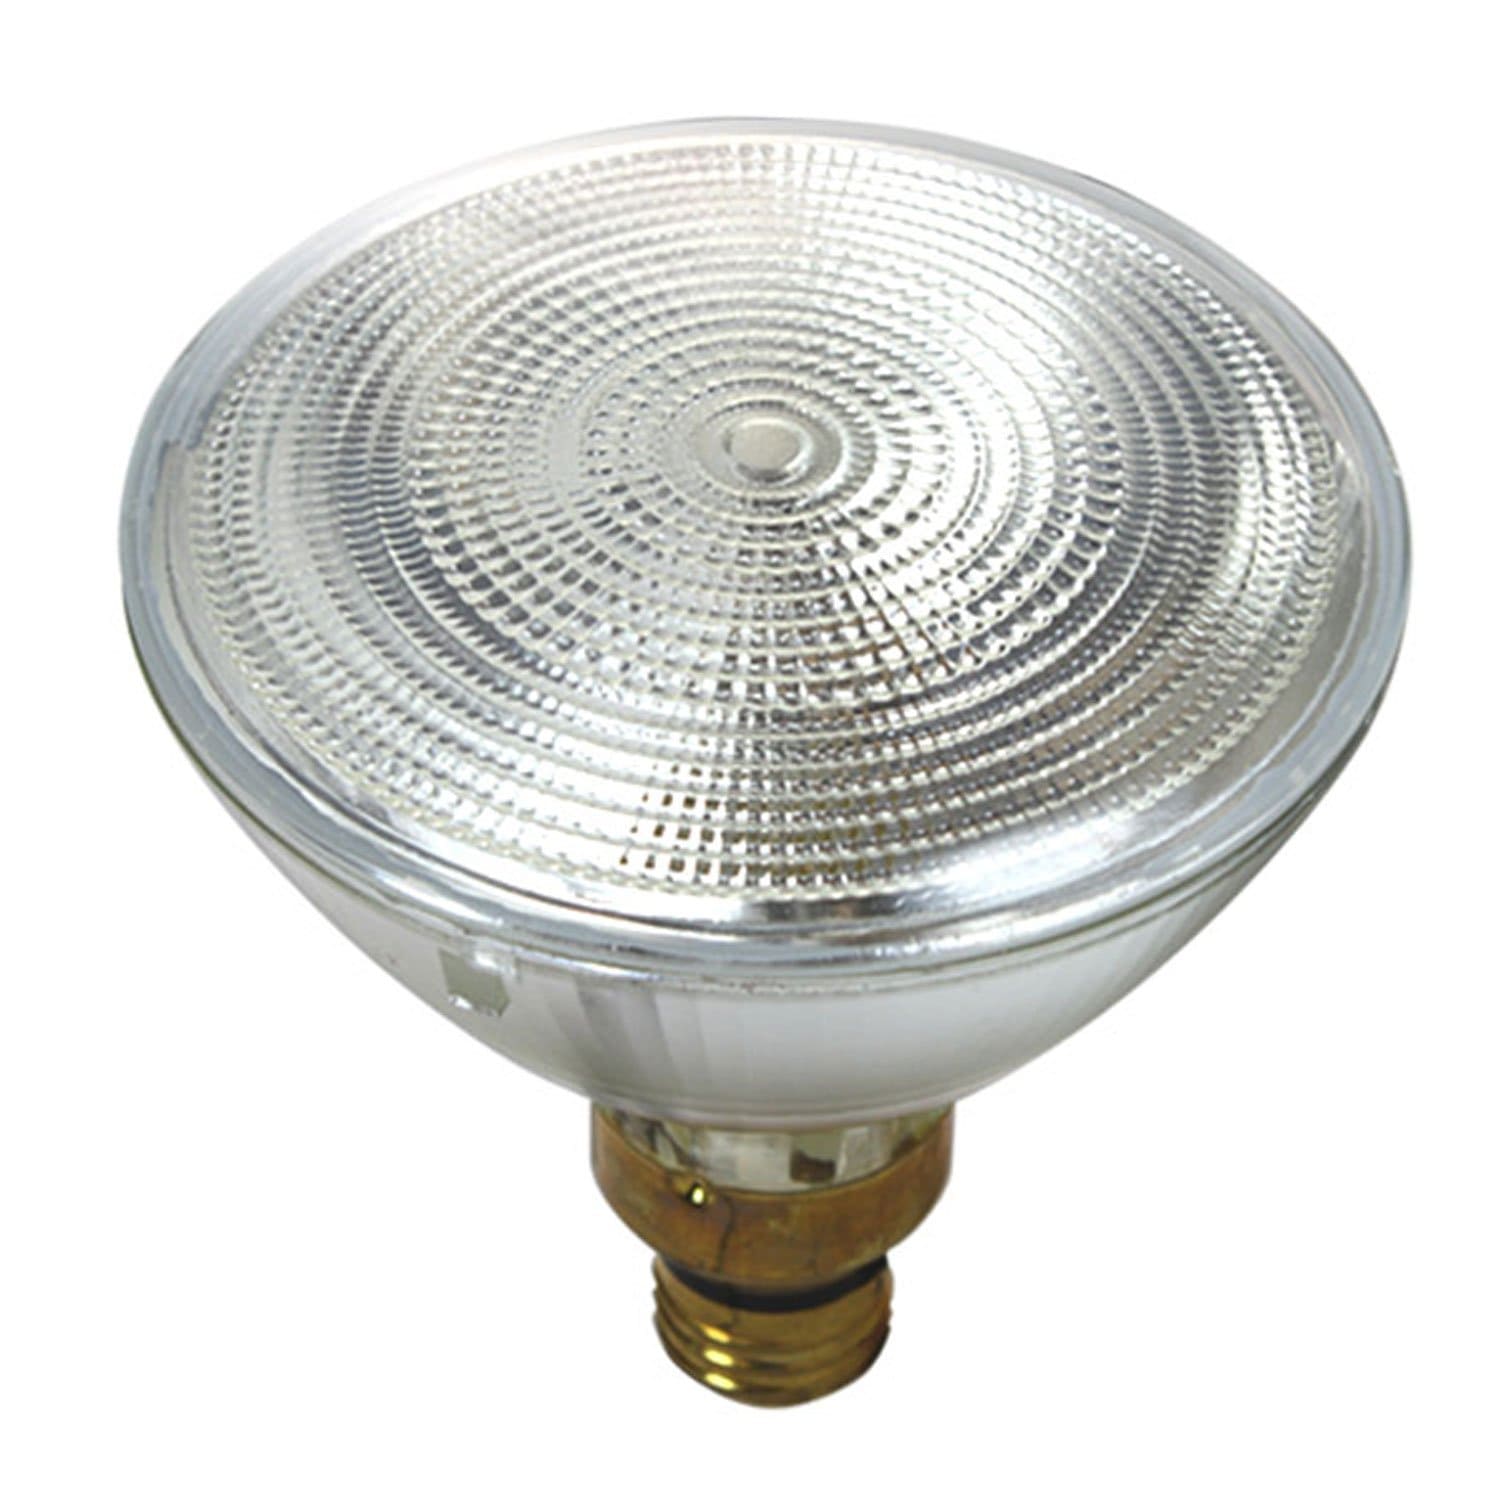 Ushio 38PAR38/FL25/120V 38W Lamp - ProSound and Stage Lighting